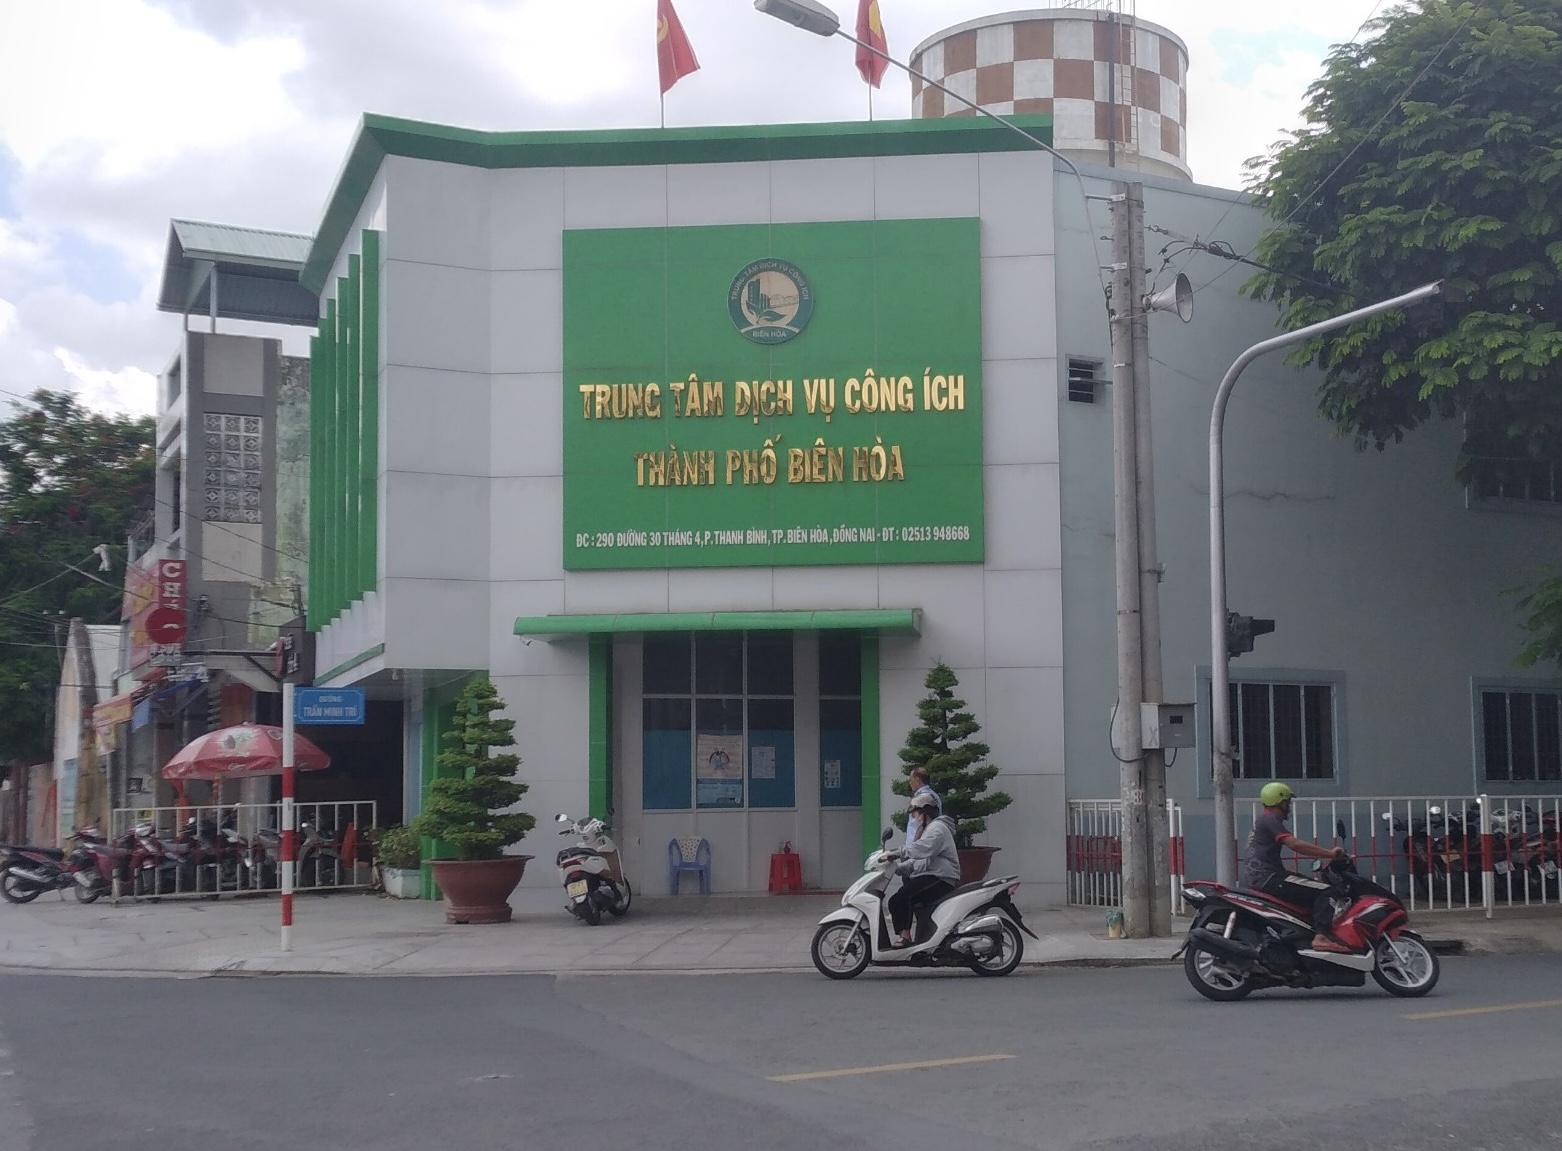 Trung tâm dịch vụ công ích TP Biên Hòa thuê xe rửa đường giá 320 triệu đồng/tháng - Ảnh 1.